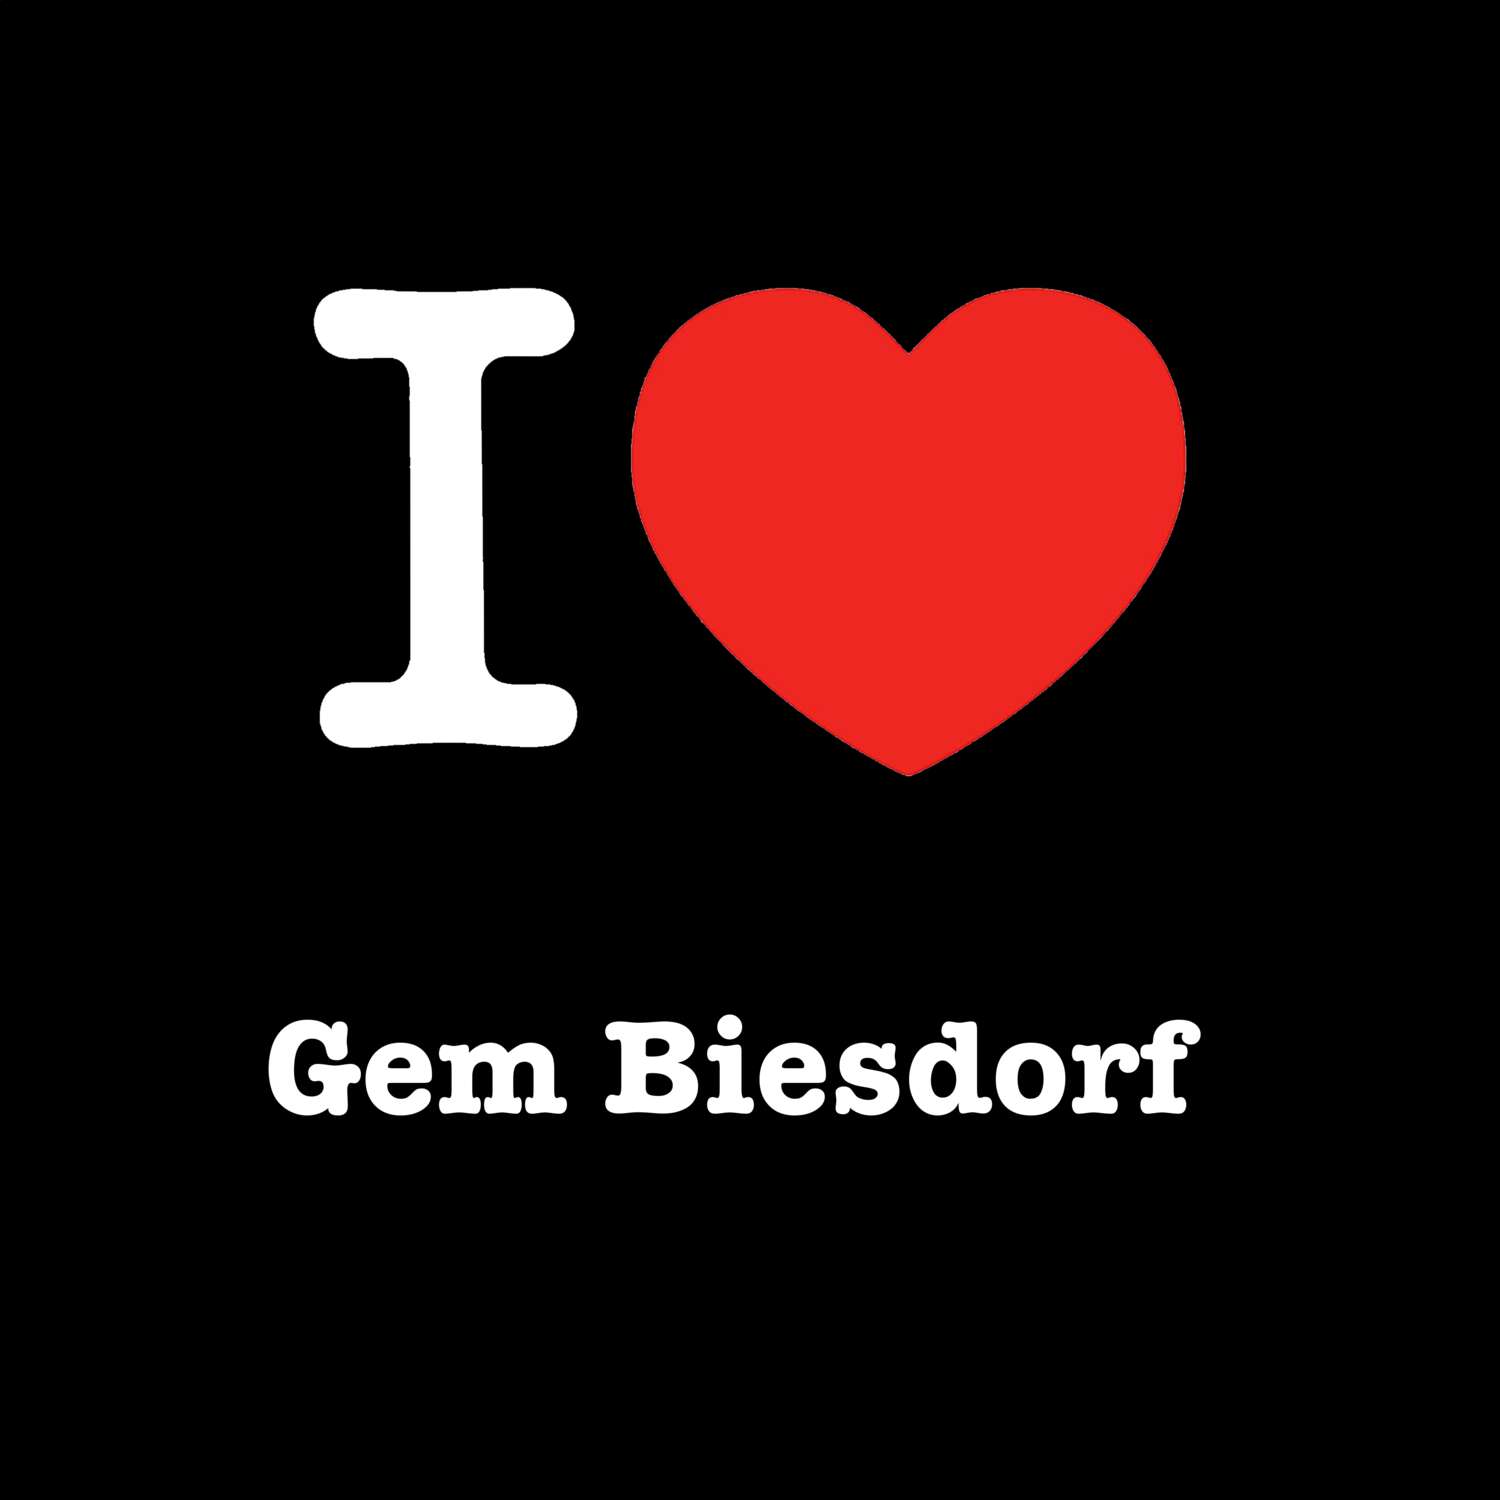 Gem Biesdorf T-Shirt »I love«